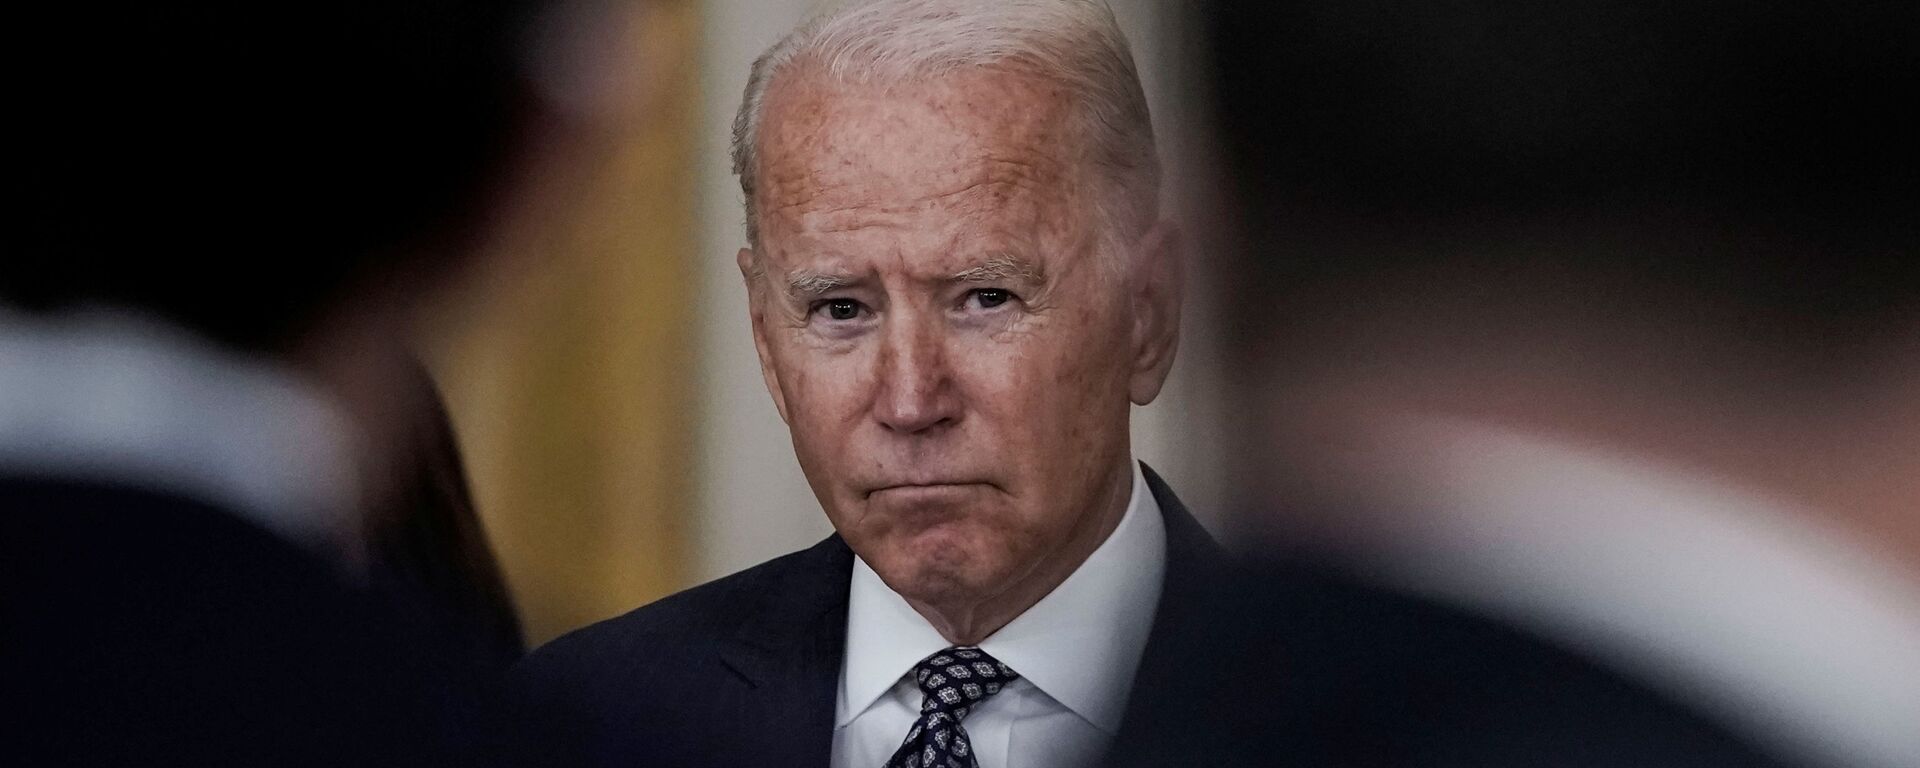 Tổng thống Joe Biden đưa ra nhận xét về các nỗ lực sơ tán và tình hình đang diễn ra ở Afghanistan trong bài phát biểu tại Phòng phía Đông tại Nhà Trắng ở Washington, Hoa Kỳ, ngày 20 tháng 8 năm 2021 - Sputnik Việt Nam, 1920, 30.03.2022